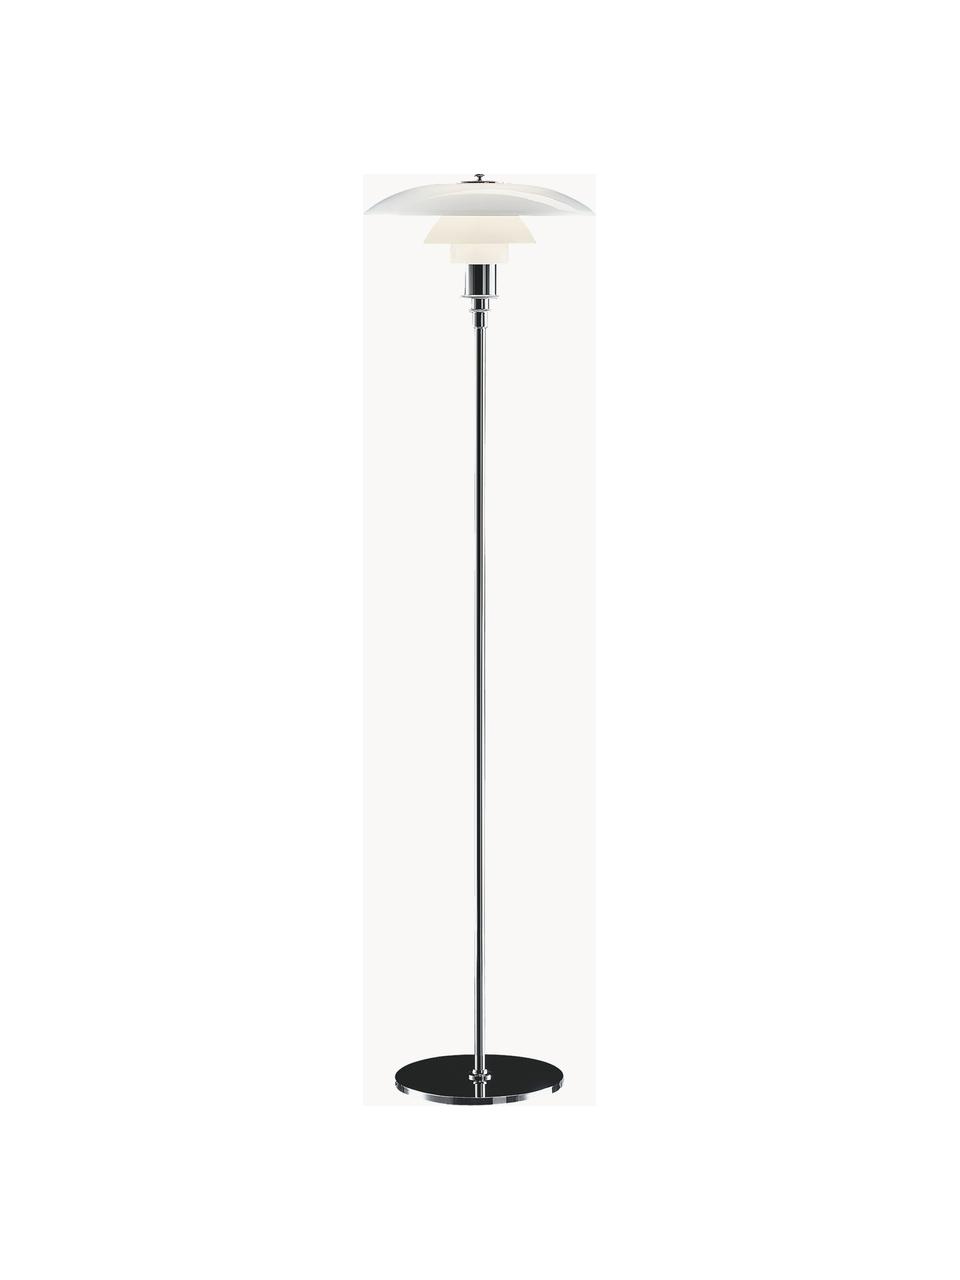 Kleine vloerlamp PH 3½-2½, mondgeblazen, Lampenkap: opaalglas, mondgeblazen, Lampvoet: messing, verchroomd, Zilverkleurig, wit, H 130 cm